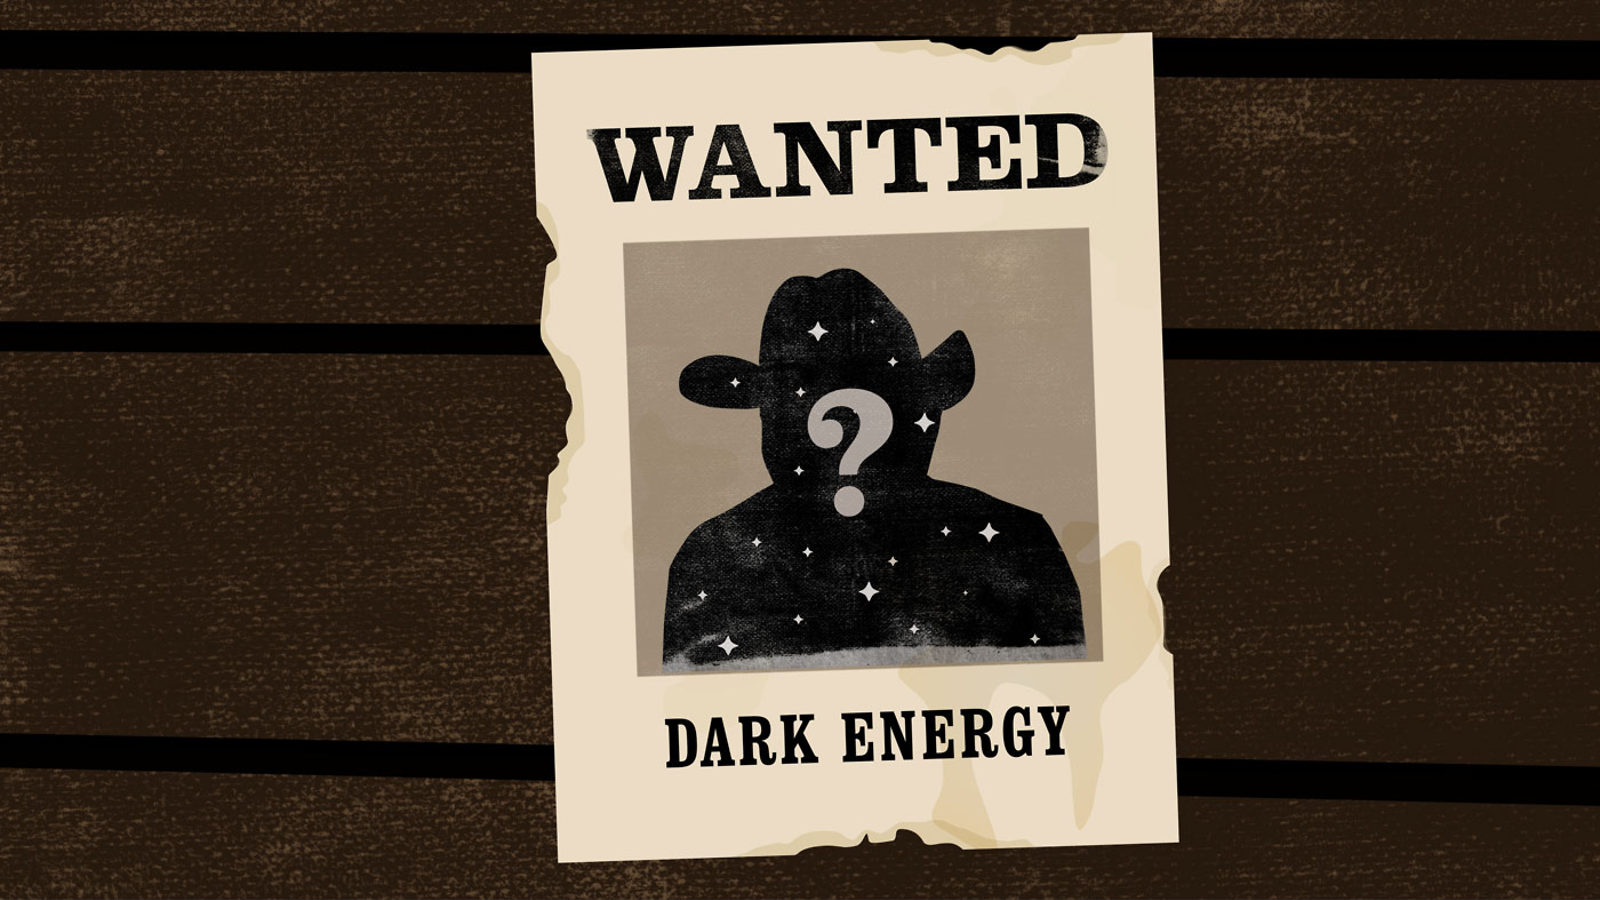 DarkEnergy_Wanted.jpg